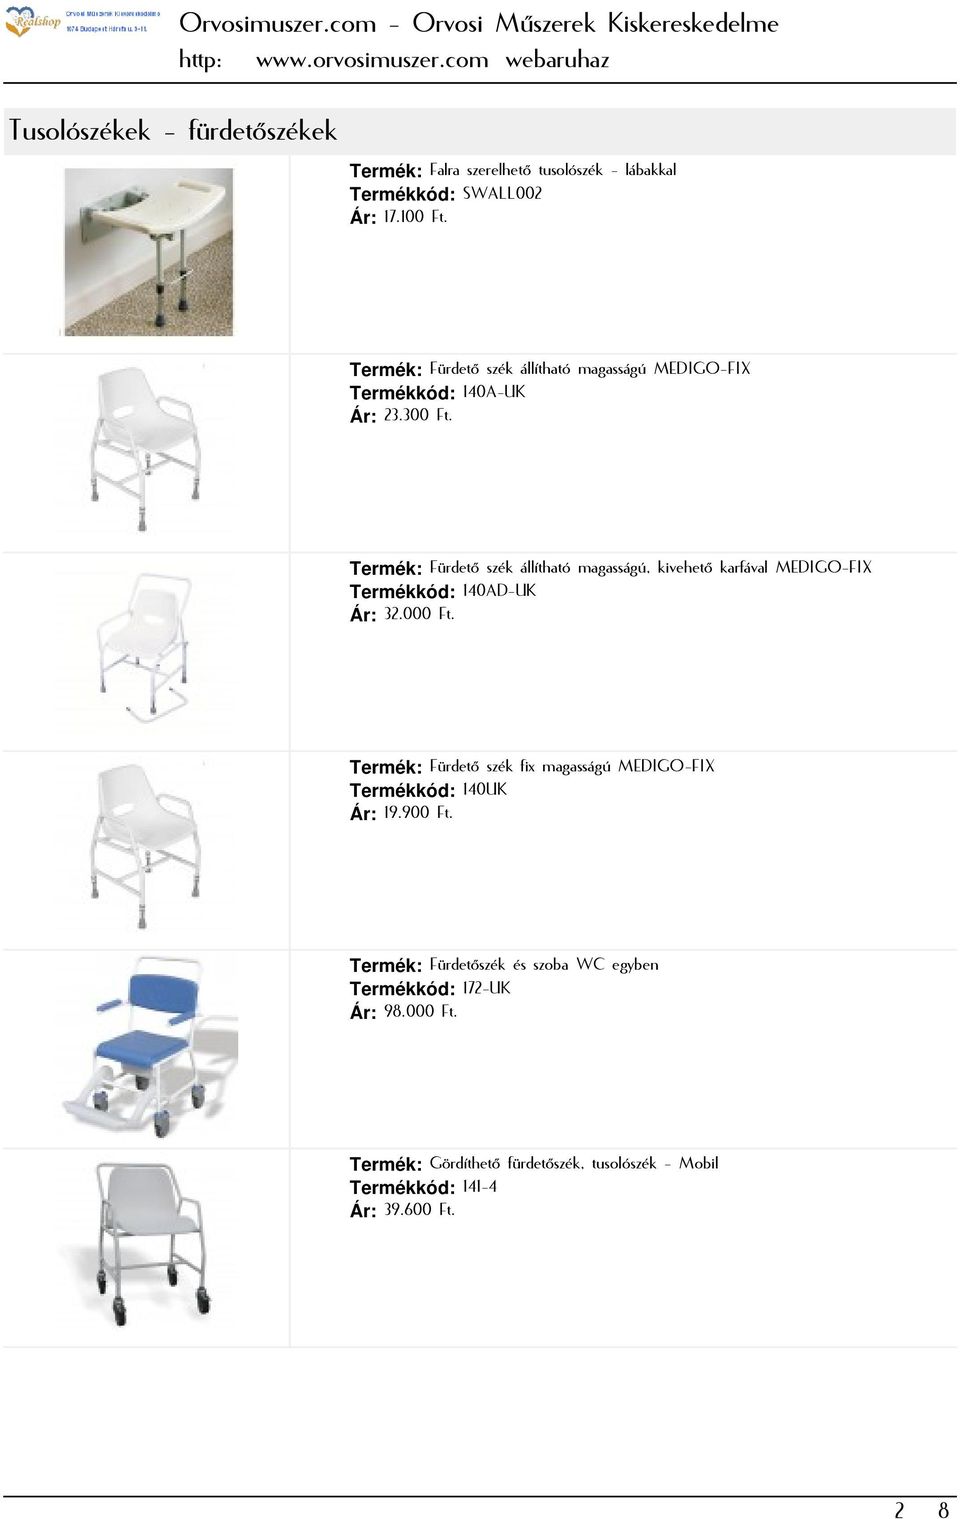 Termék: Fürdető szék állítható magasságú, kivehető karfával MEDIGO-FIX Termékkód: 140AD-UK Ár: 32.000 Ft.